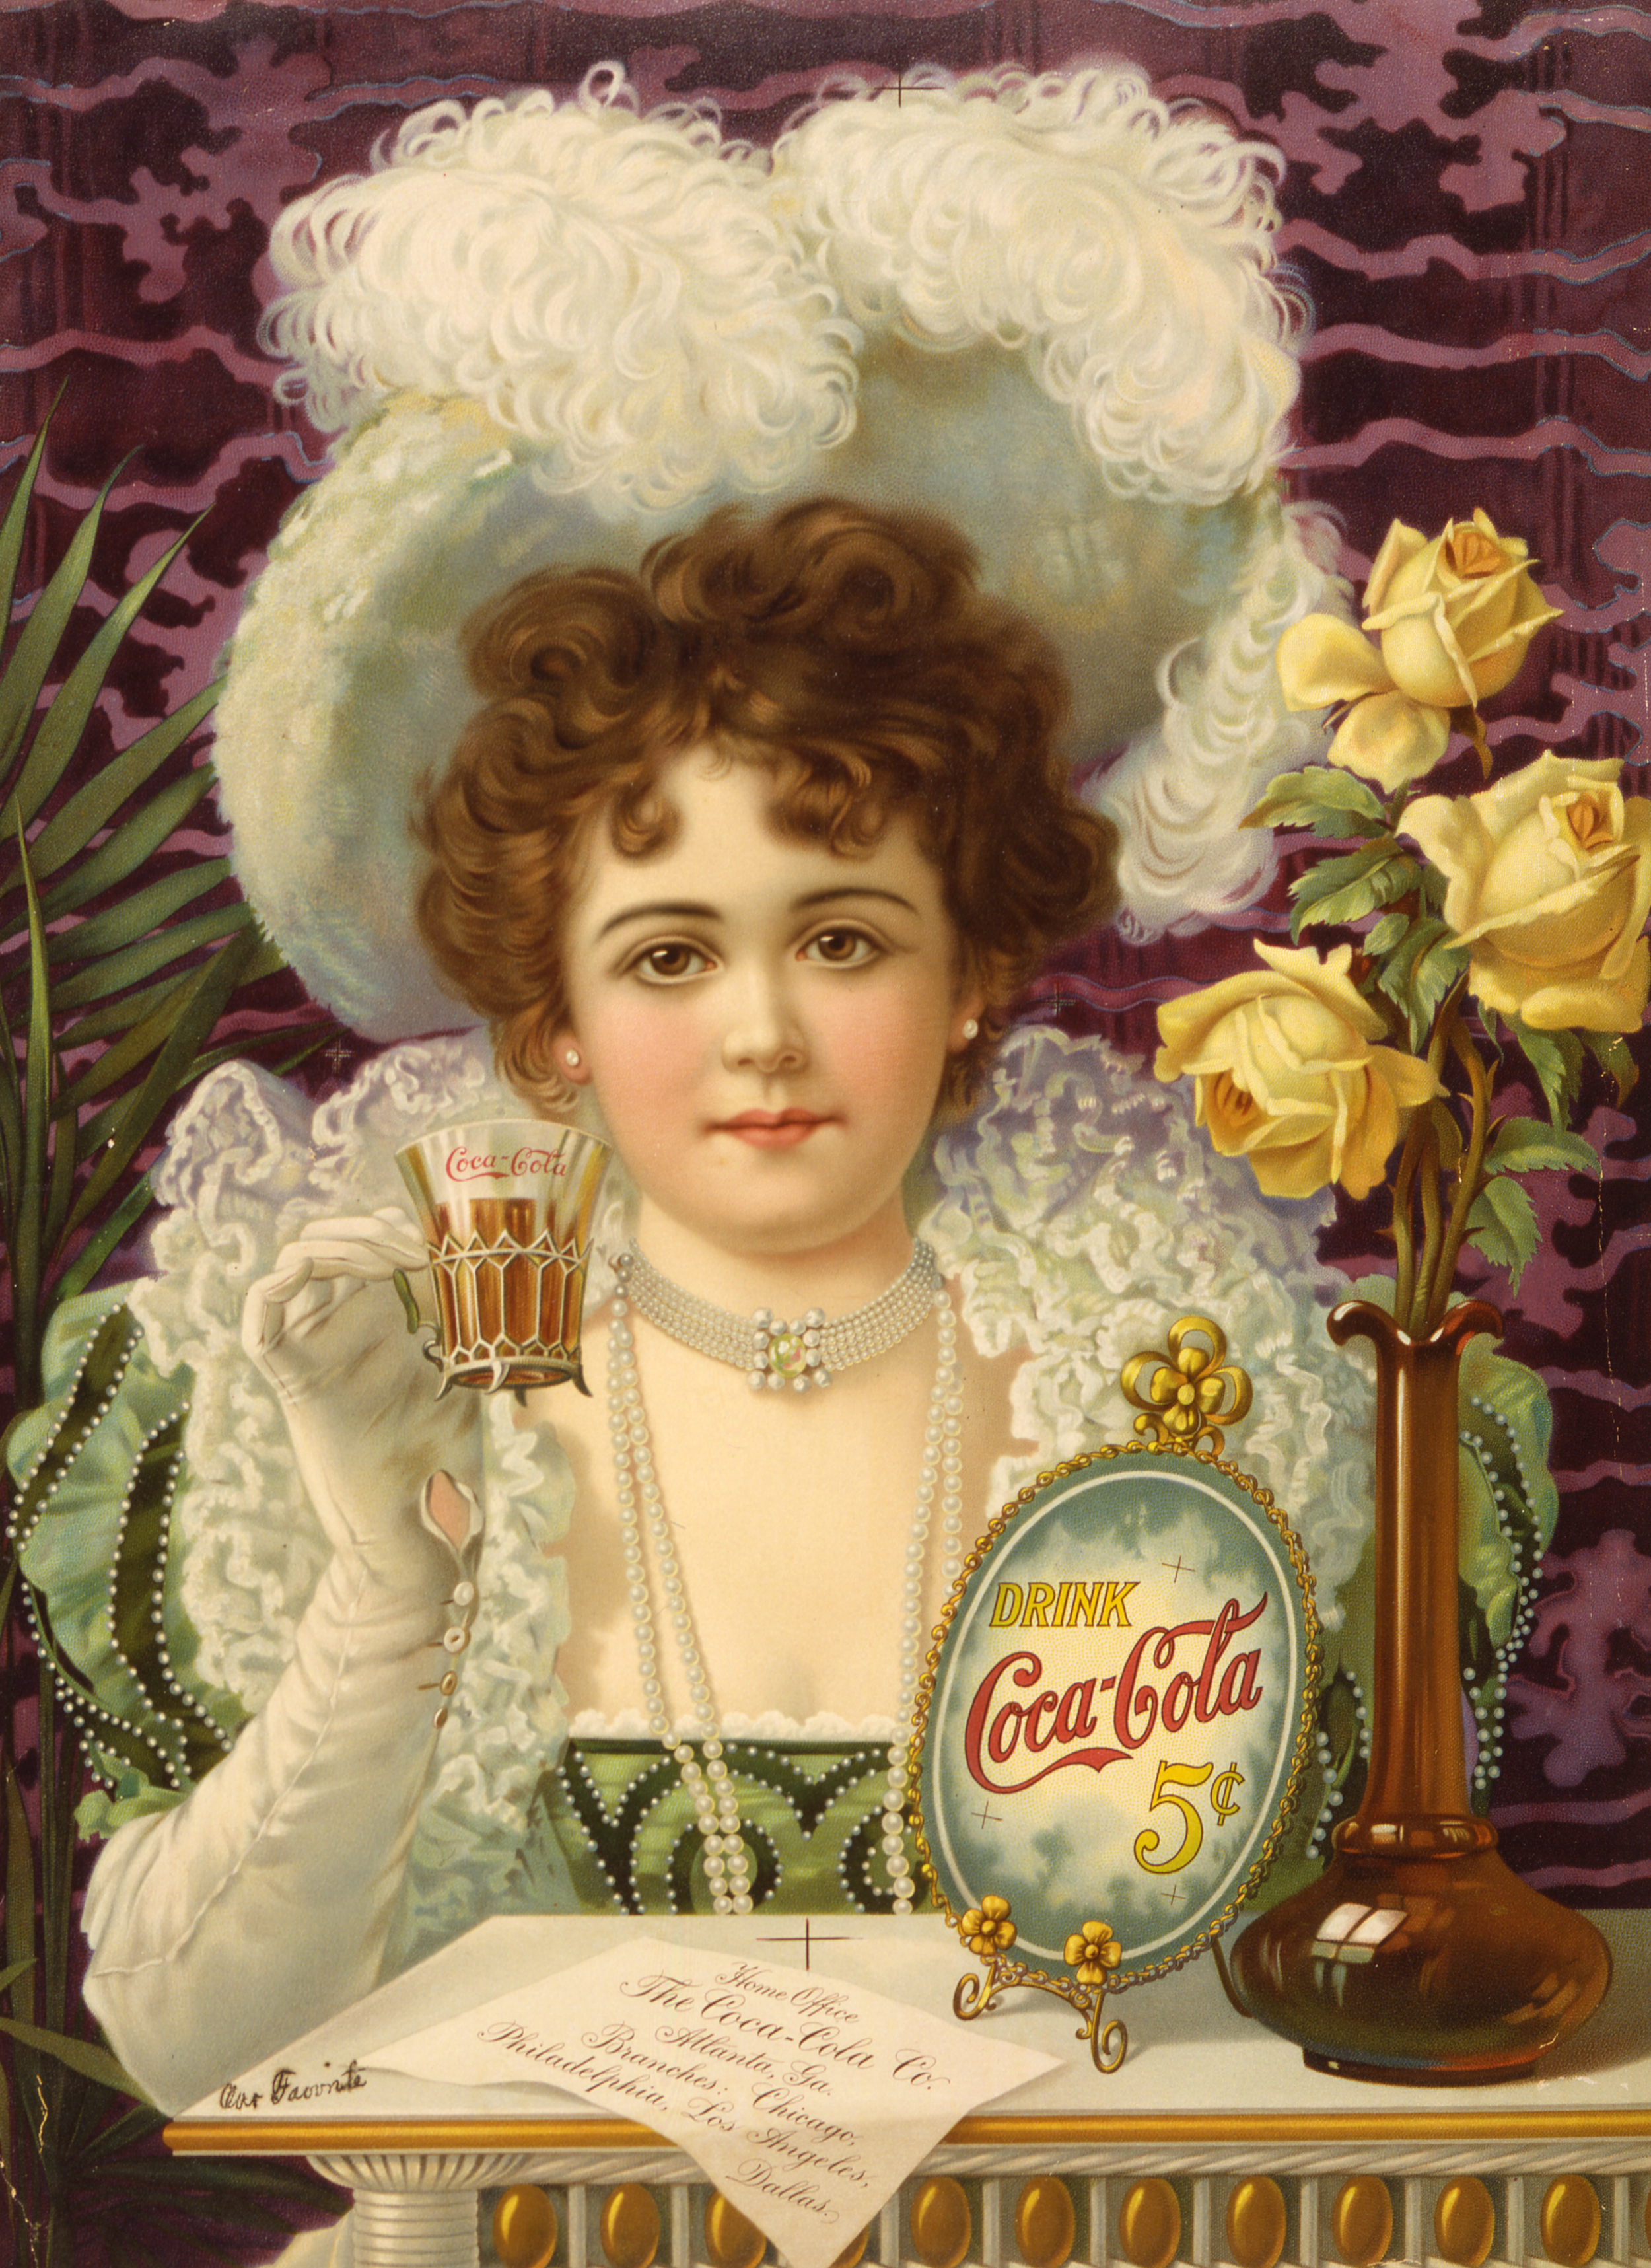 Coca-Cola Ad circa 1890 - Full View